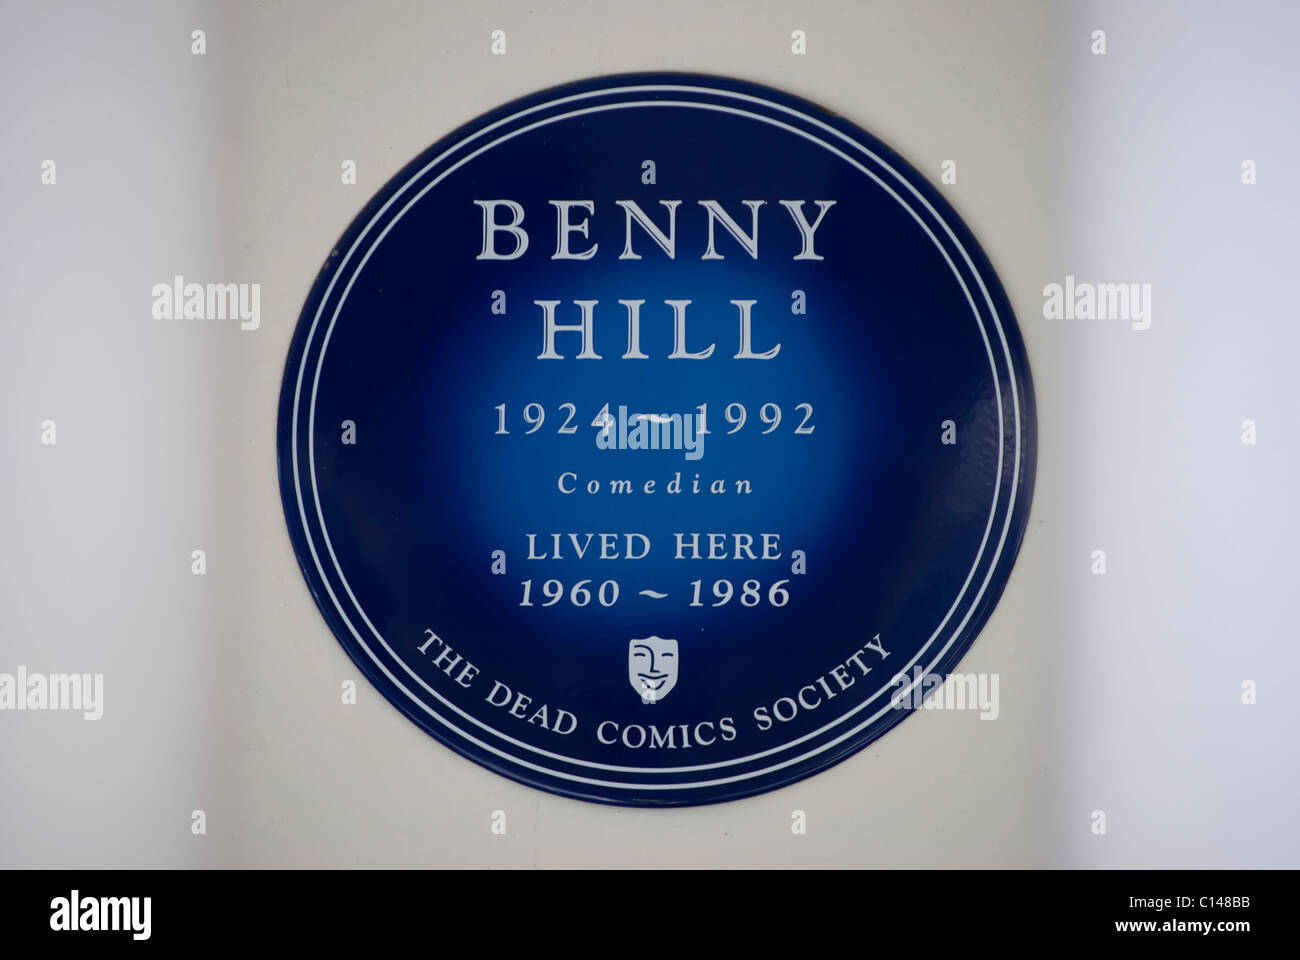 La société bd mort blue plaque marquant un accueil de Benny Hill, comédien dans Queen's Gate, London, England Banque D'Images